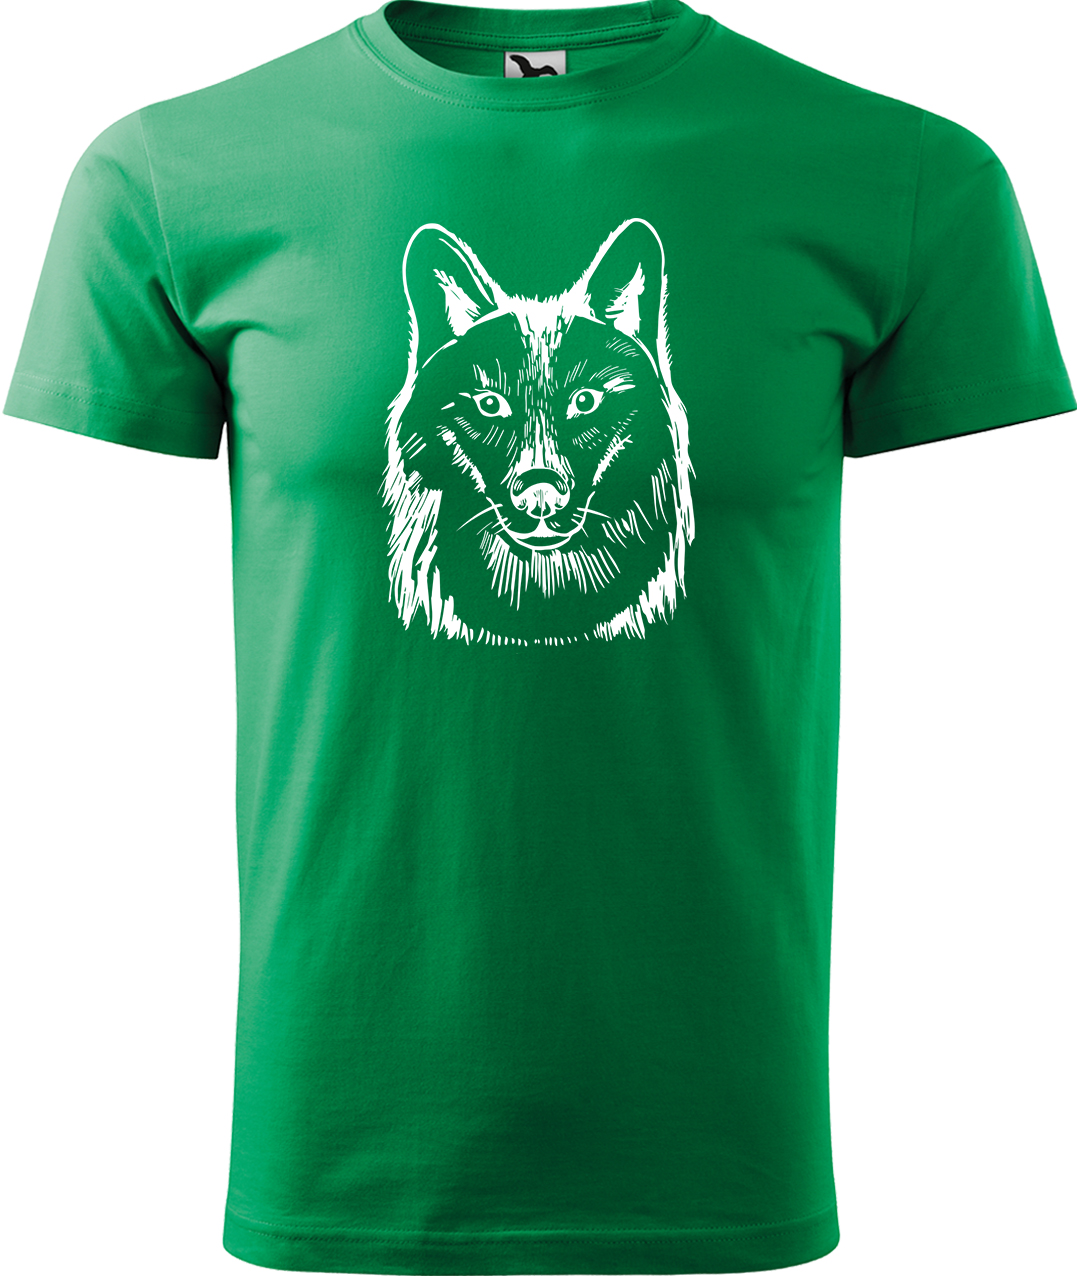 Pánské tričko s vlkem - Kresba vlka Velikost: XL, Barva: Středně zelená (16), Střih: pánský